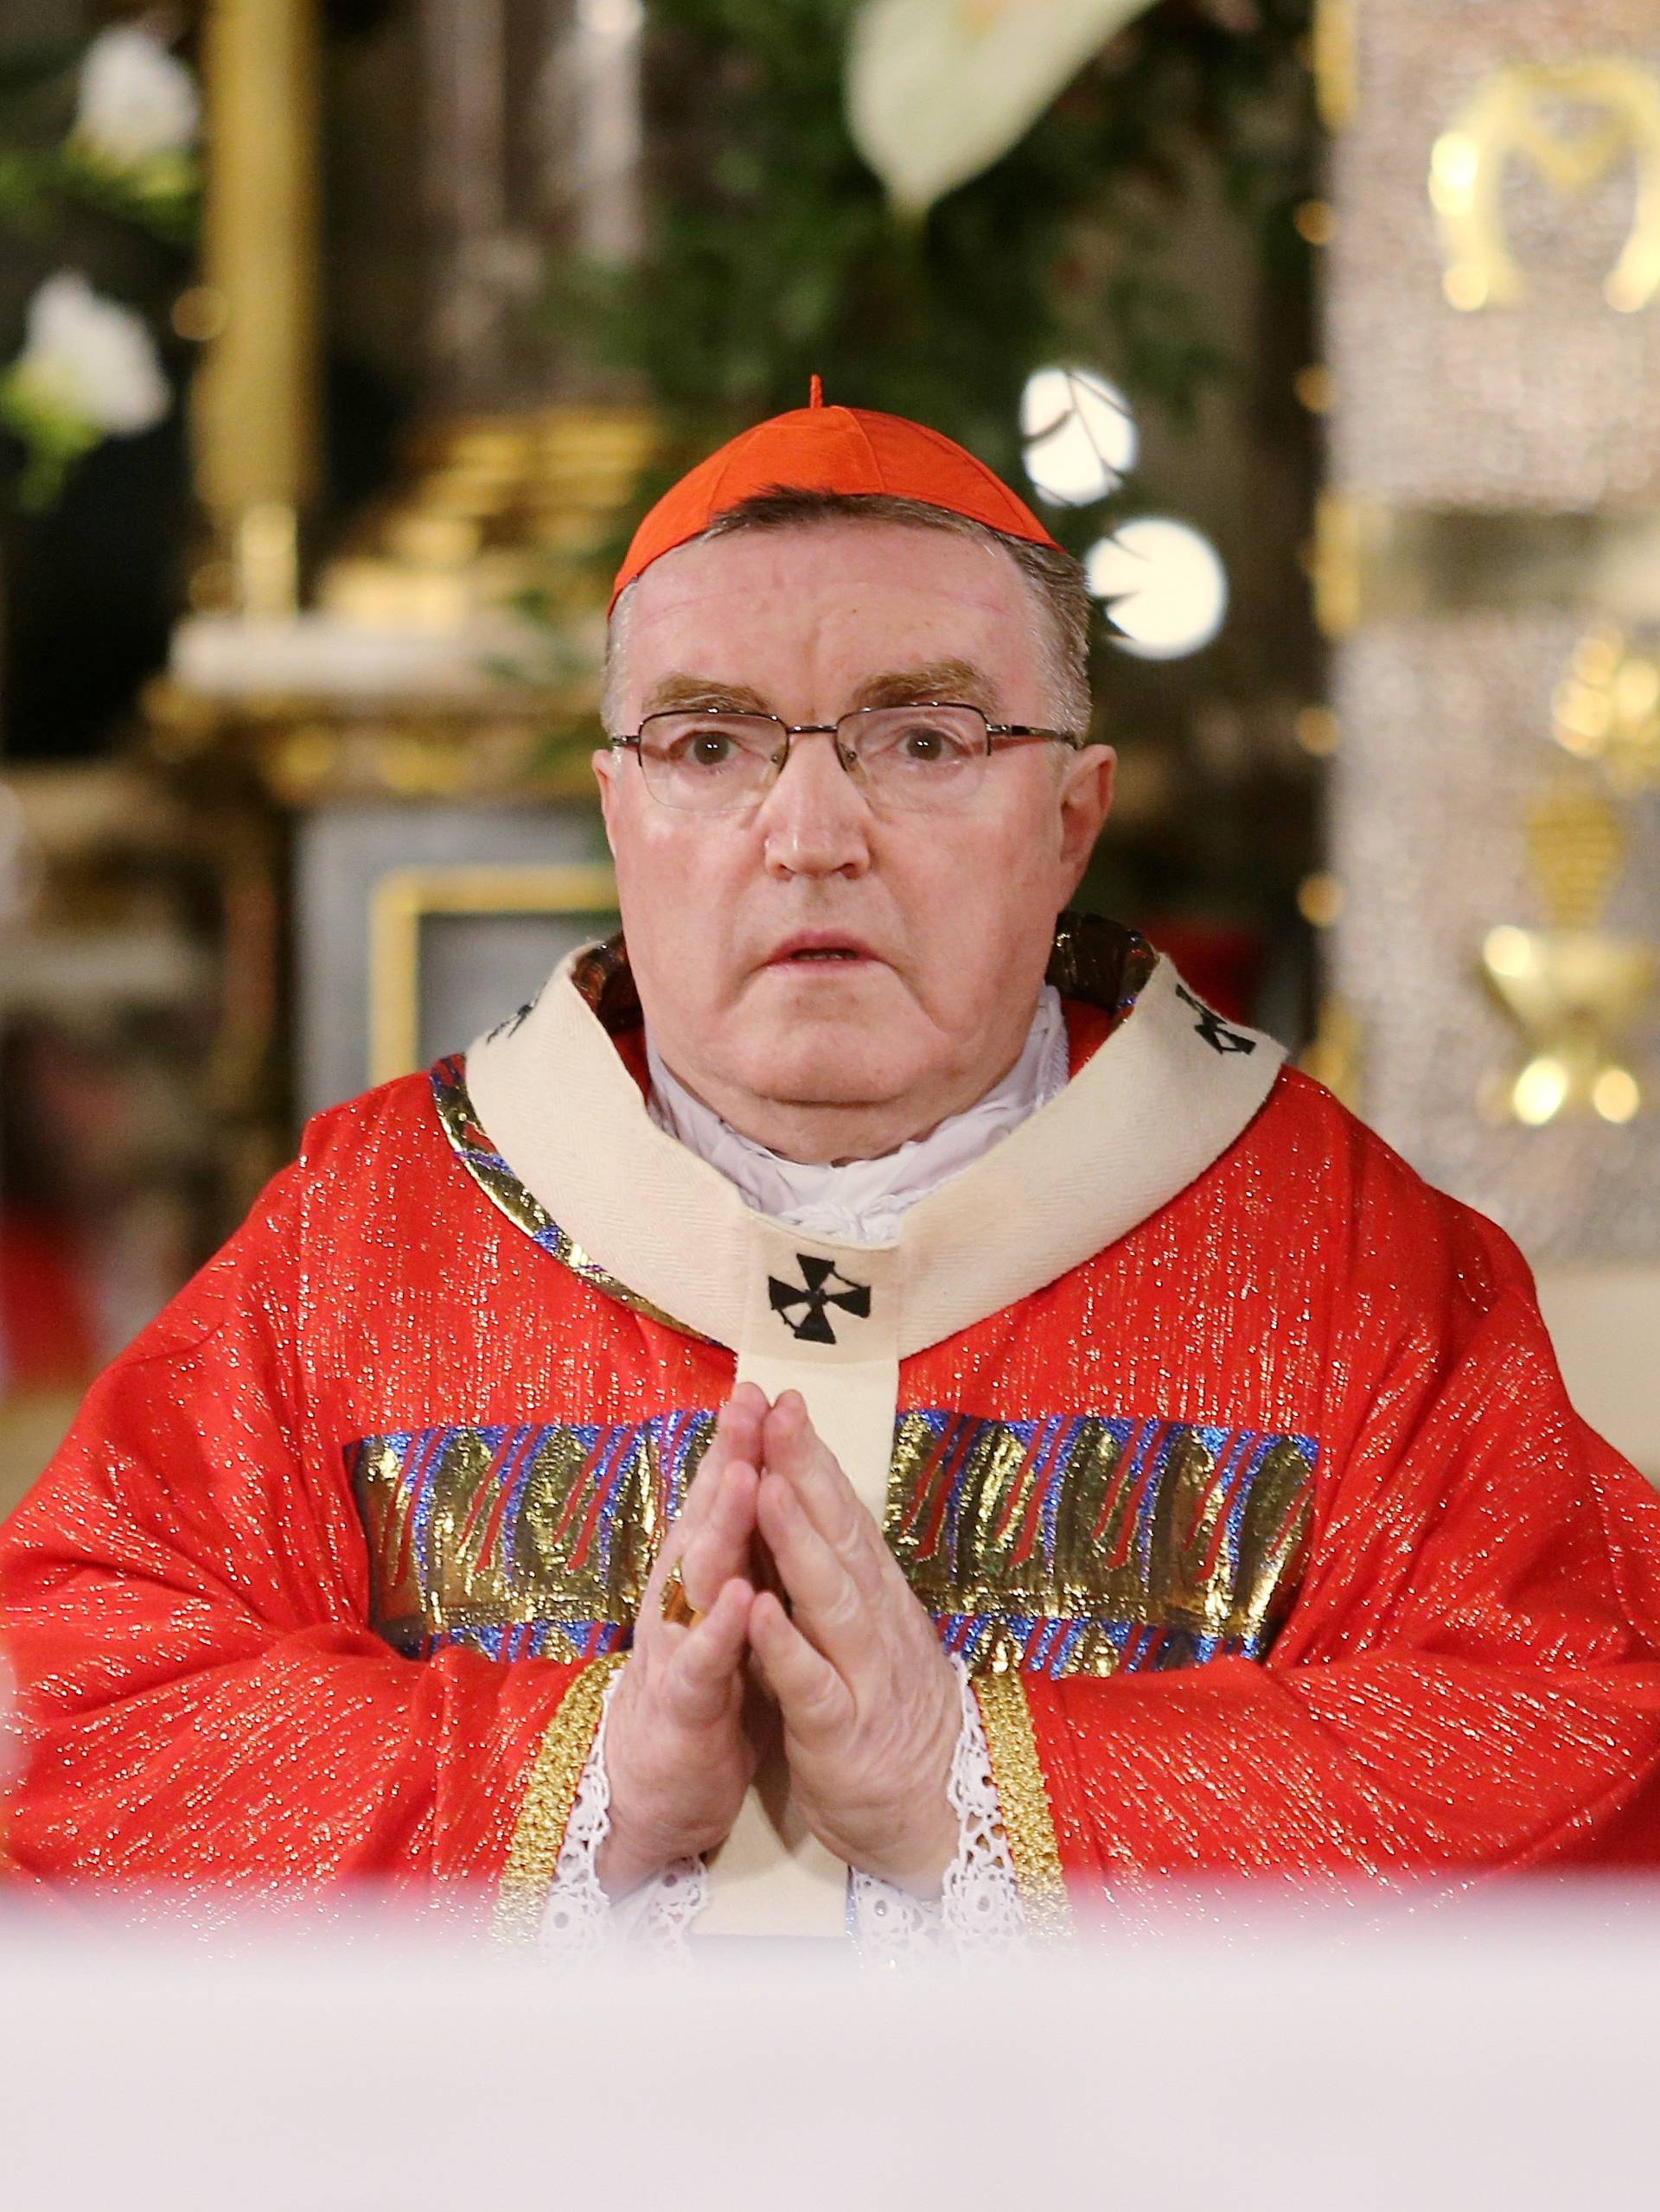 Kardinal poručuje vjernicima: 'Pozvani smo ponajprije moliti'